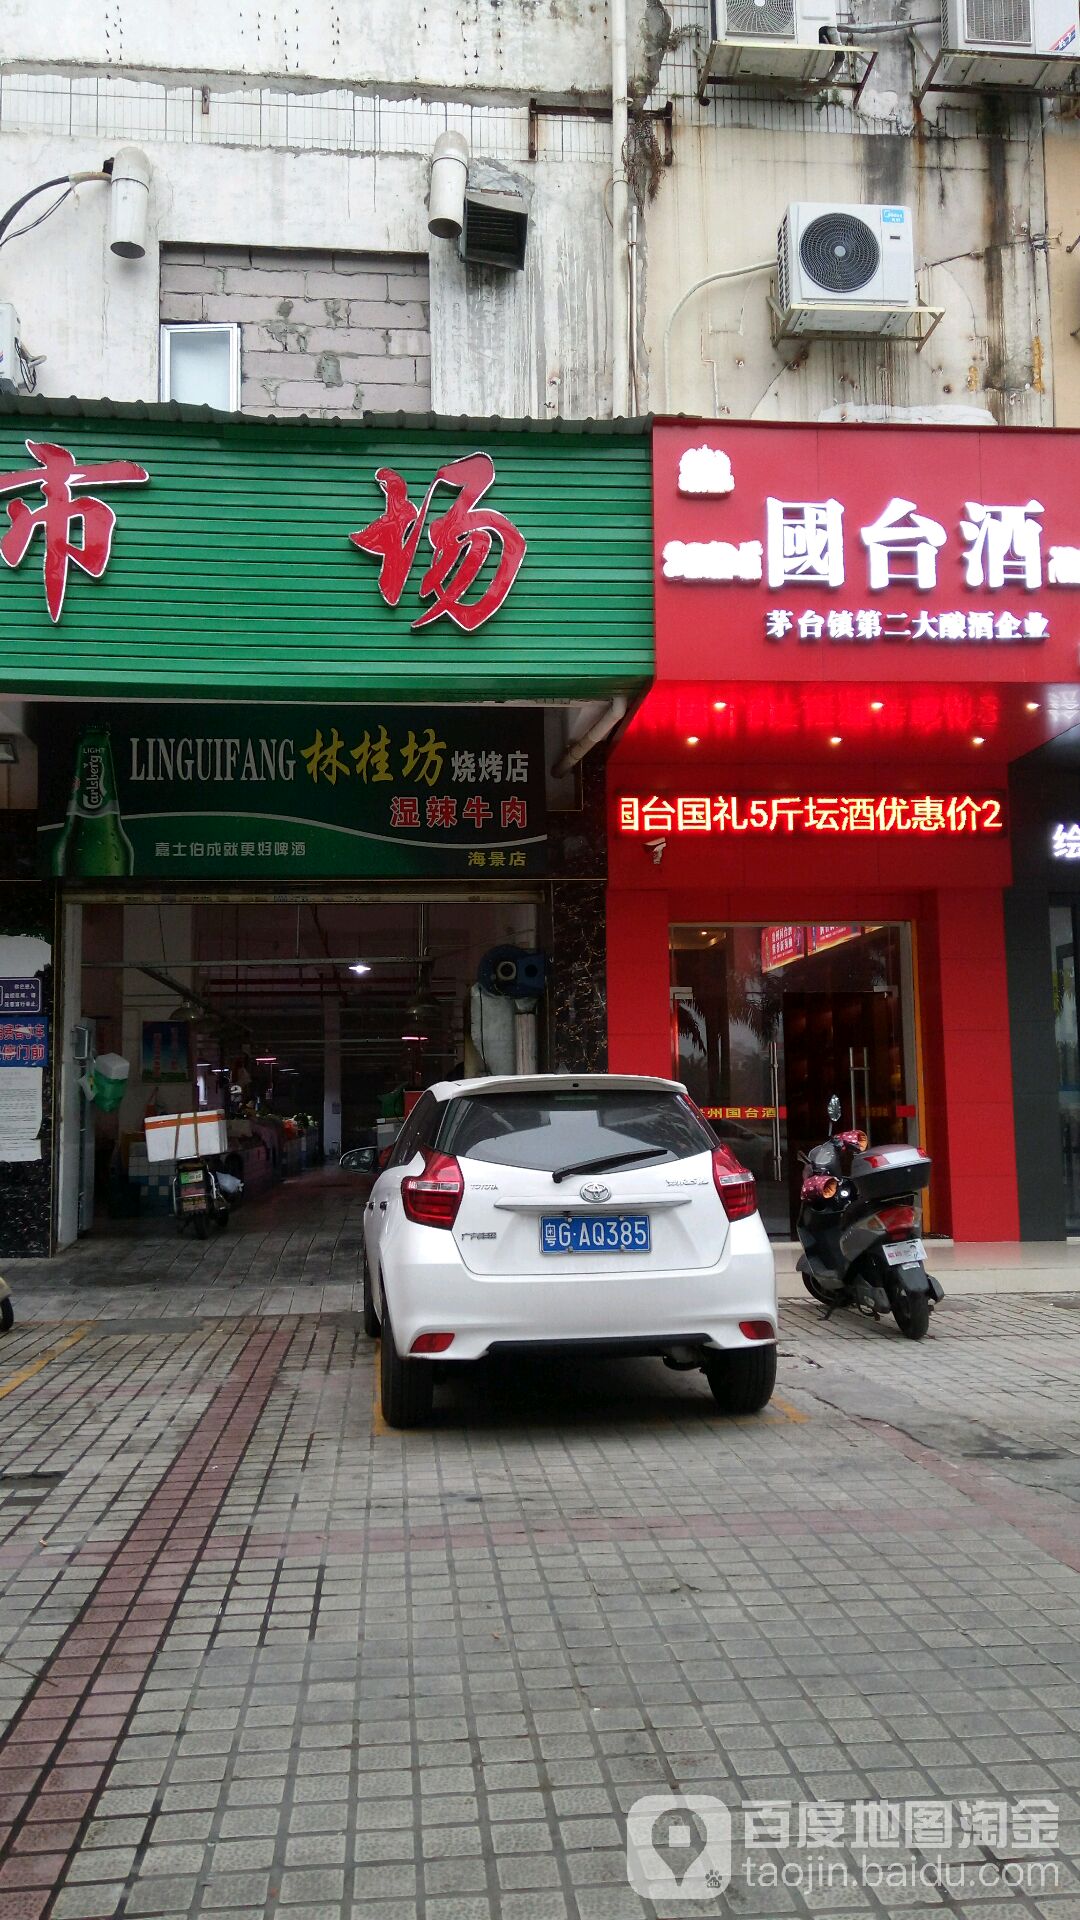 林桂坊燒烤店